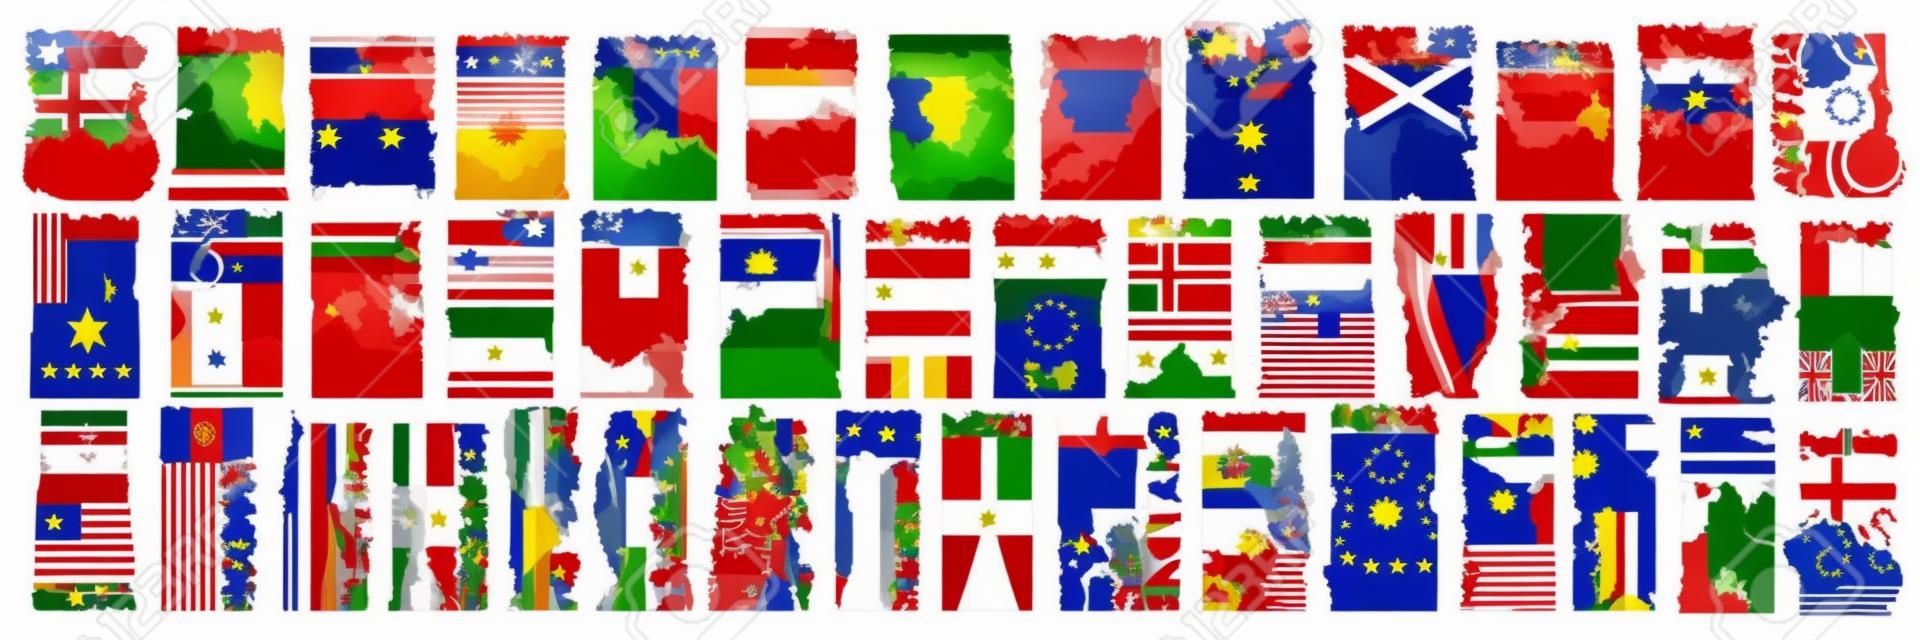 Conjunto de vetores de países europeus com bandeiras e símbolos, 43 rótulos verticais isolados com bandeiras estaduais nacionais e fonte de pincel para palavras diferentes, adesivos de design de arte para o dia da independência europeia.